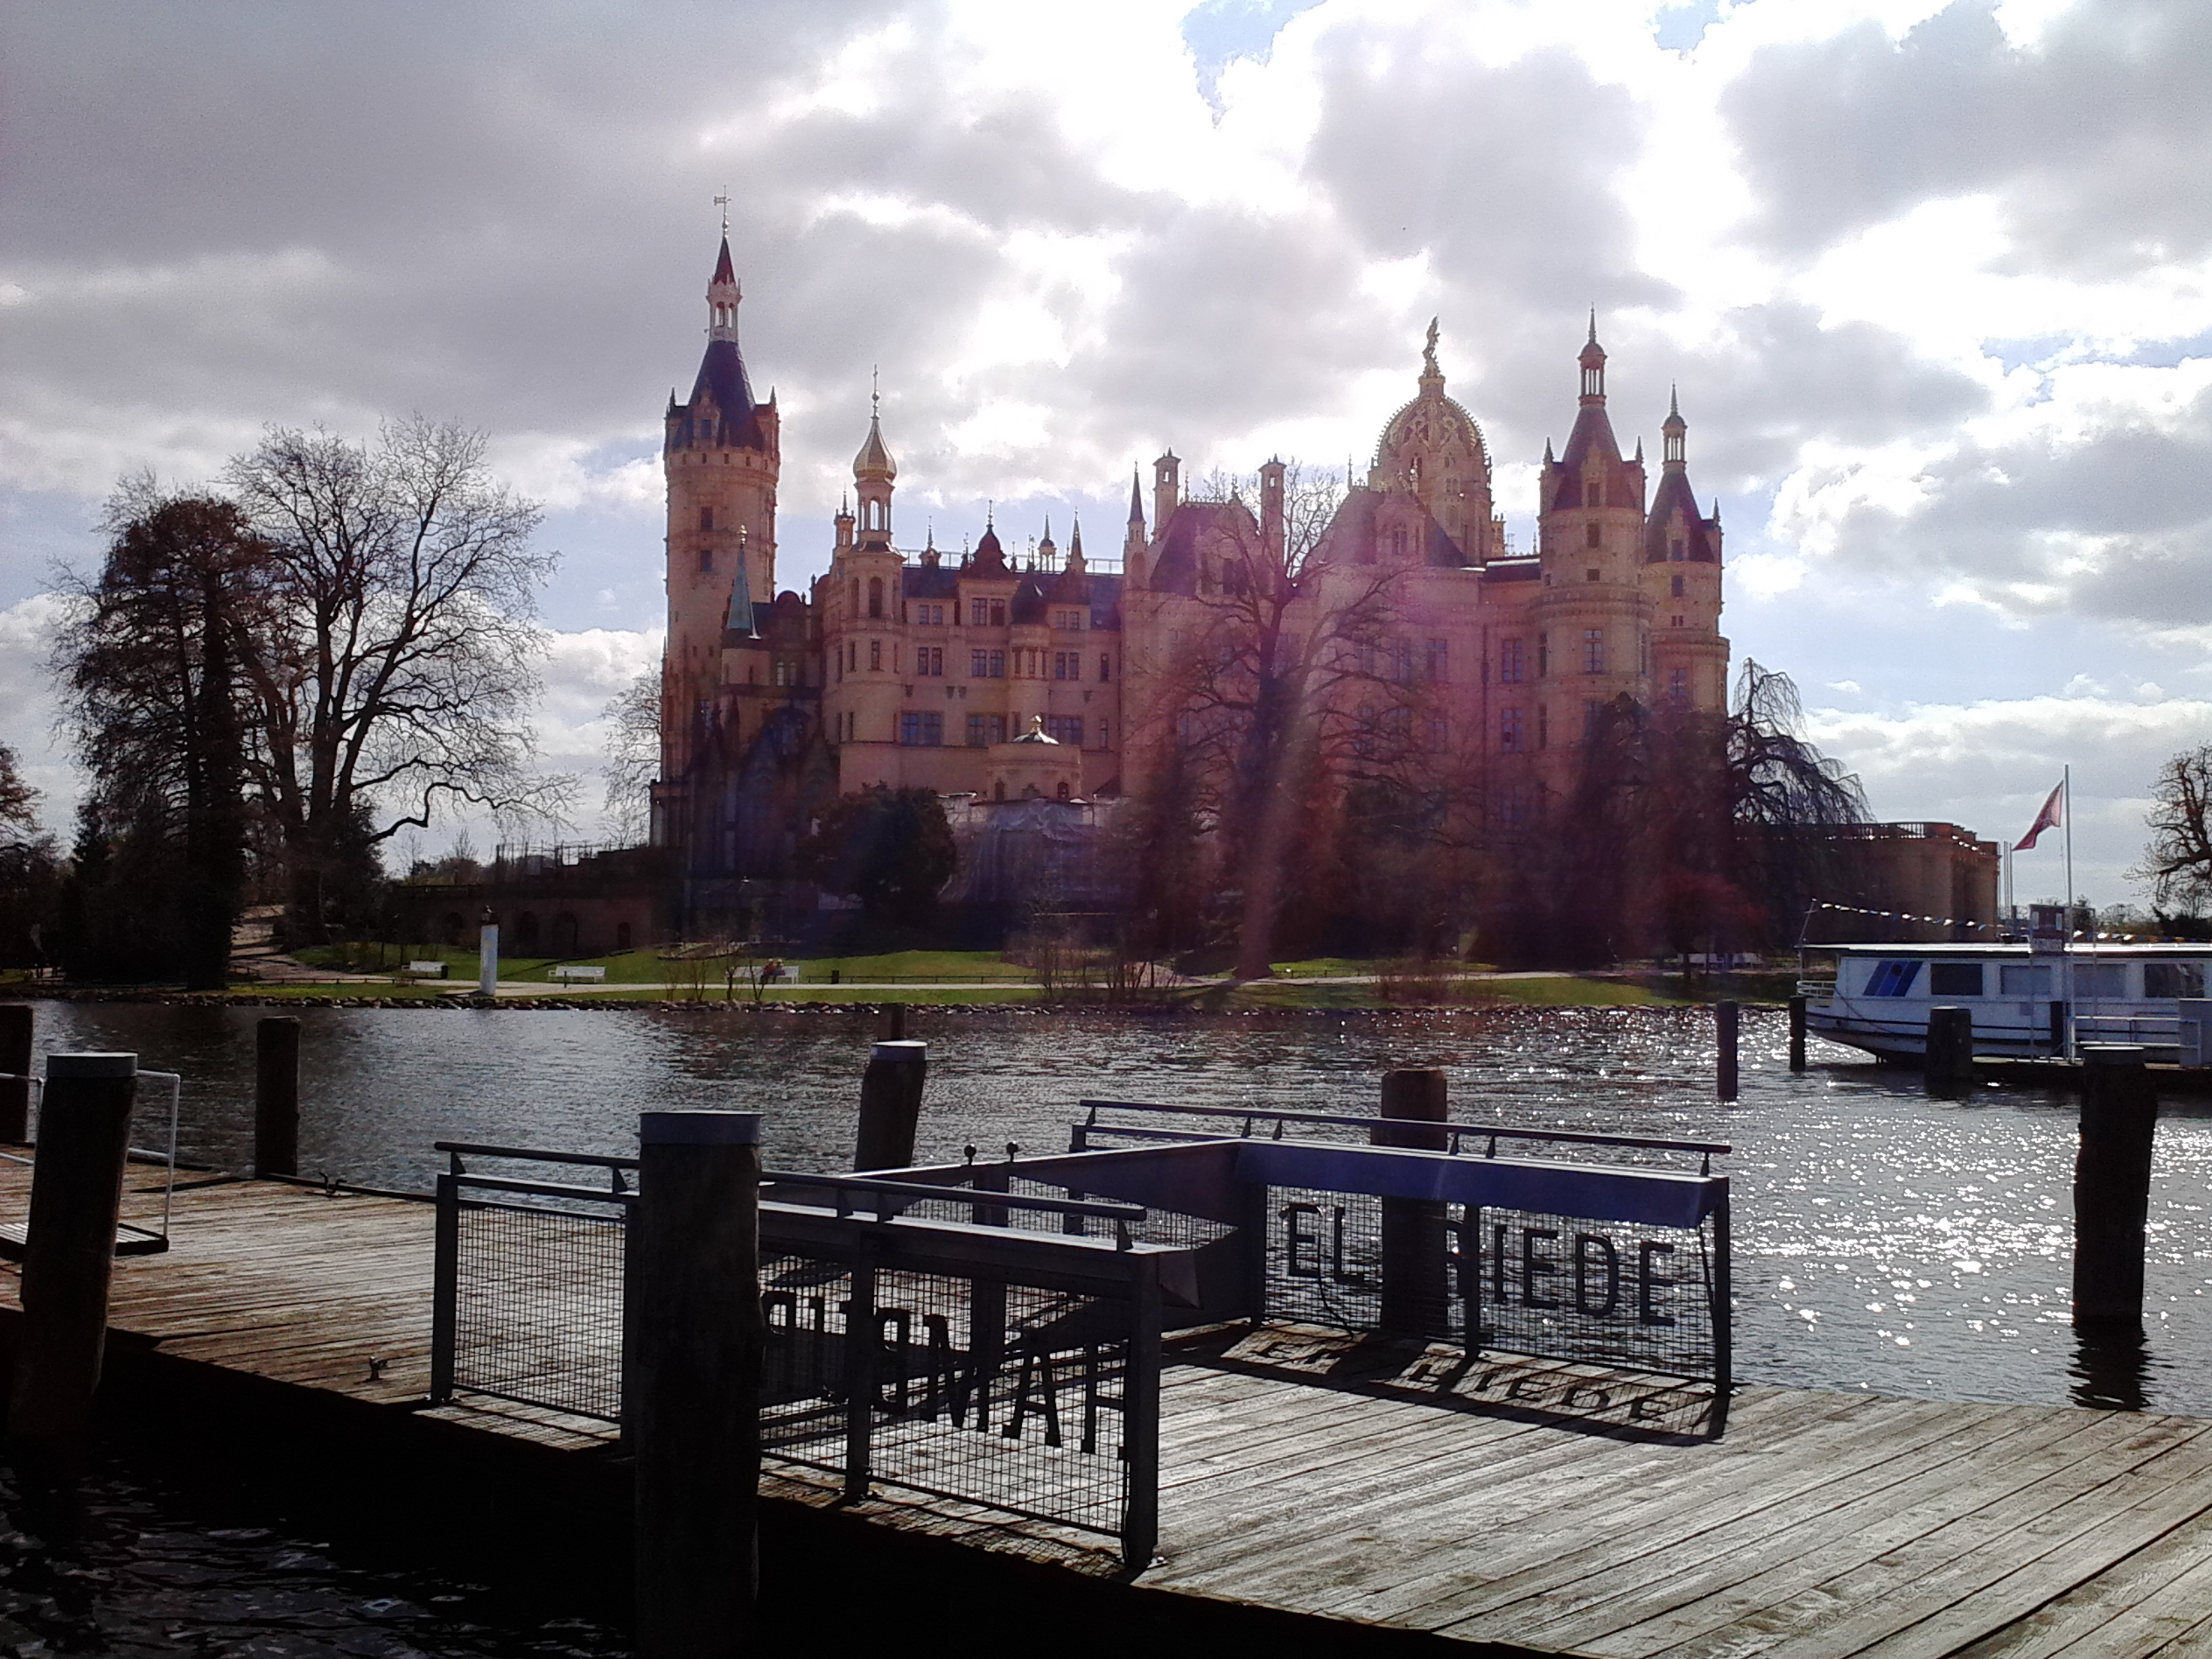 Farbfoto: Das Schloss auf der Schlossinsel im Schweriner See in Schwerin am Donnerstag, dem 16. April im Jahre 2015. Fotograf: R.I.